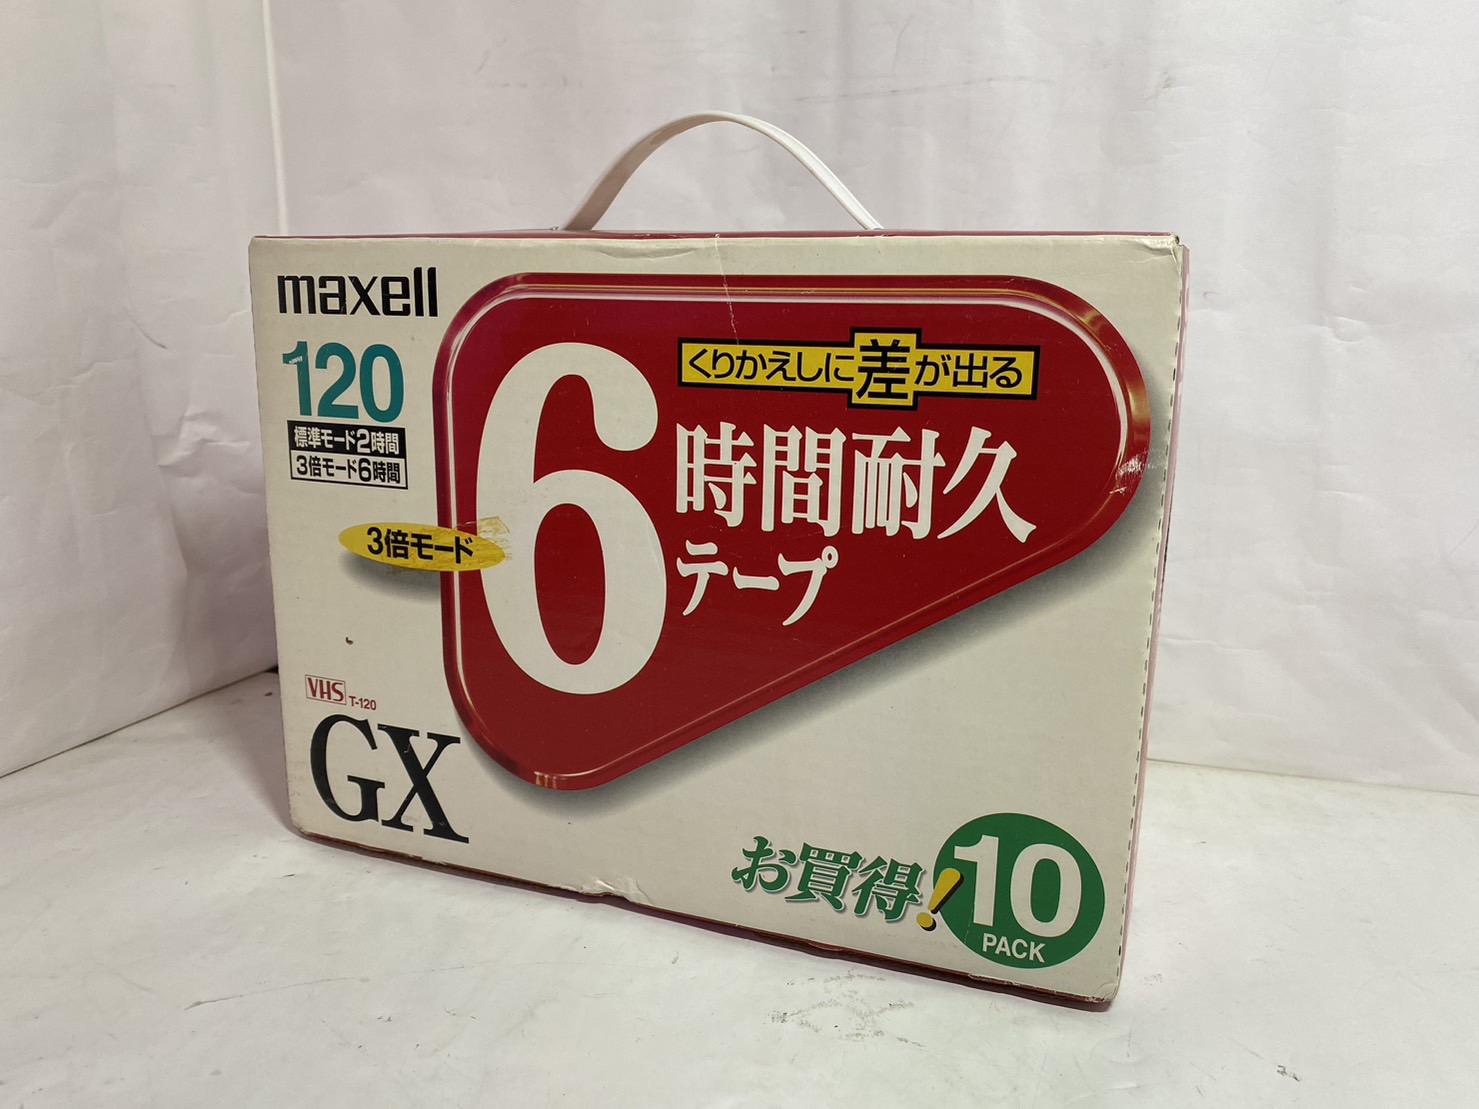 maxell VHSビデオテープ 録画用 スタンダード 120分 10巻 T-120GXS.10Pの激安通販 パソコンショップパウ